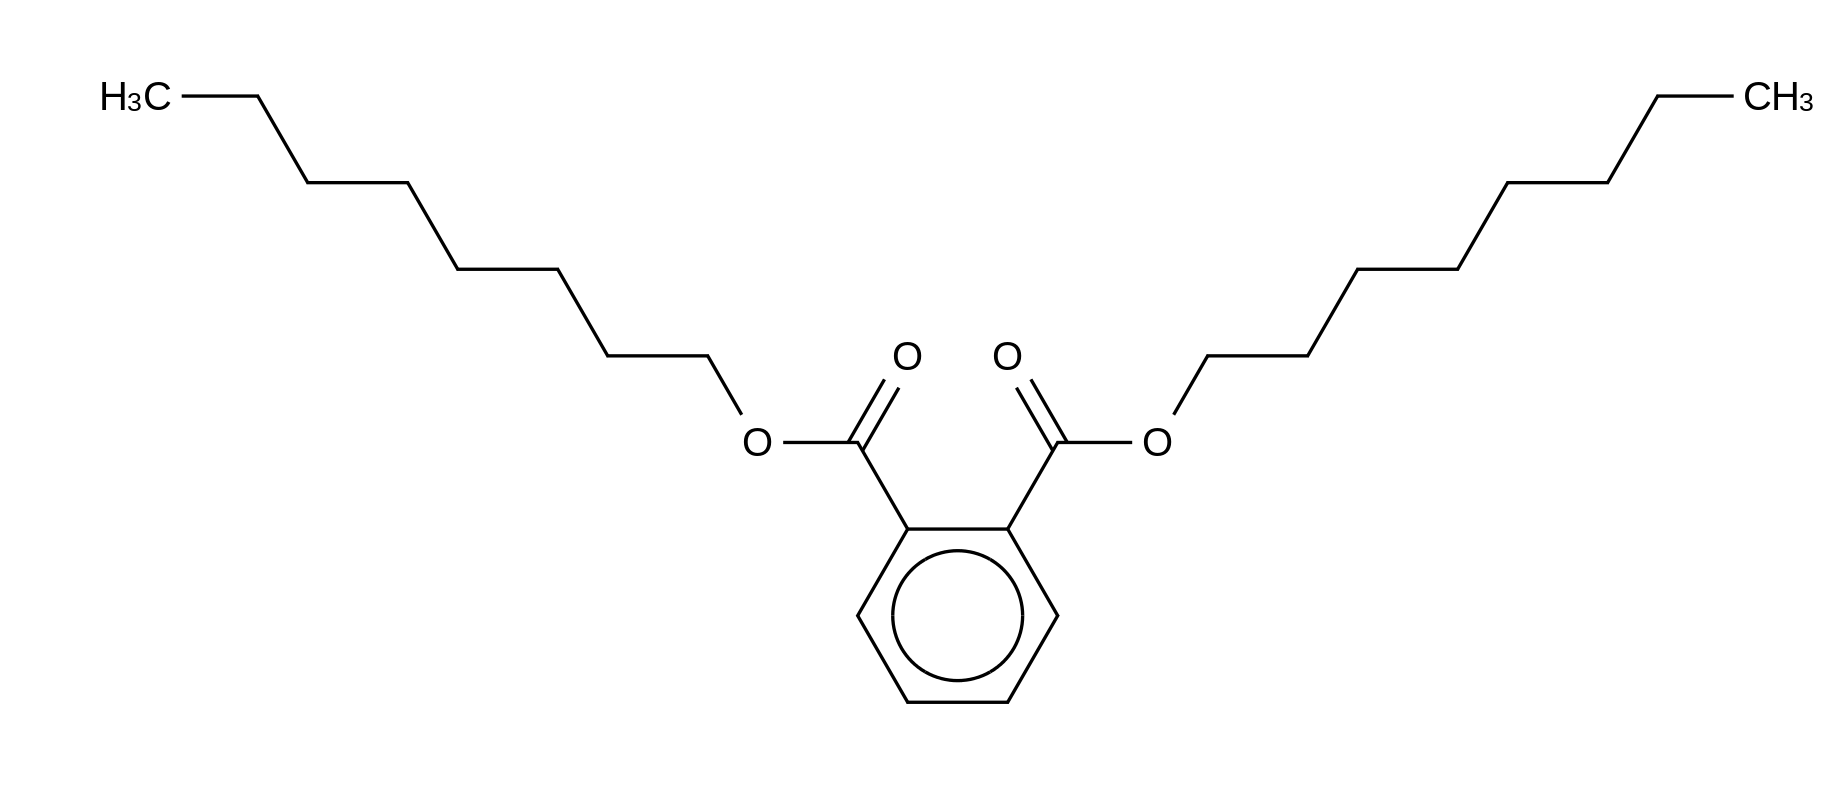 Di-n-octyl Phthalate